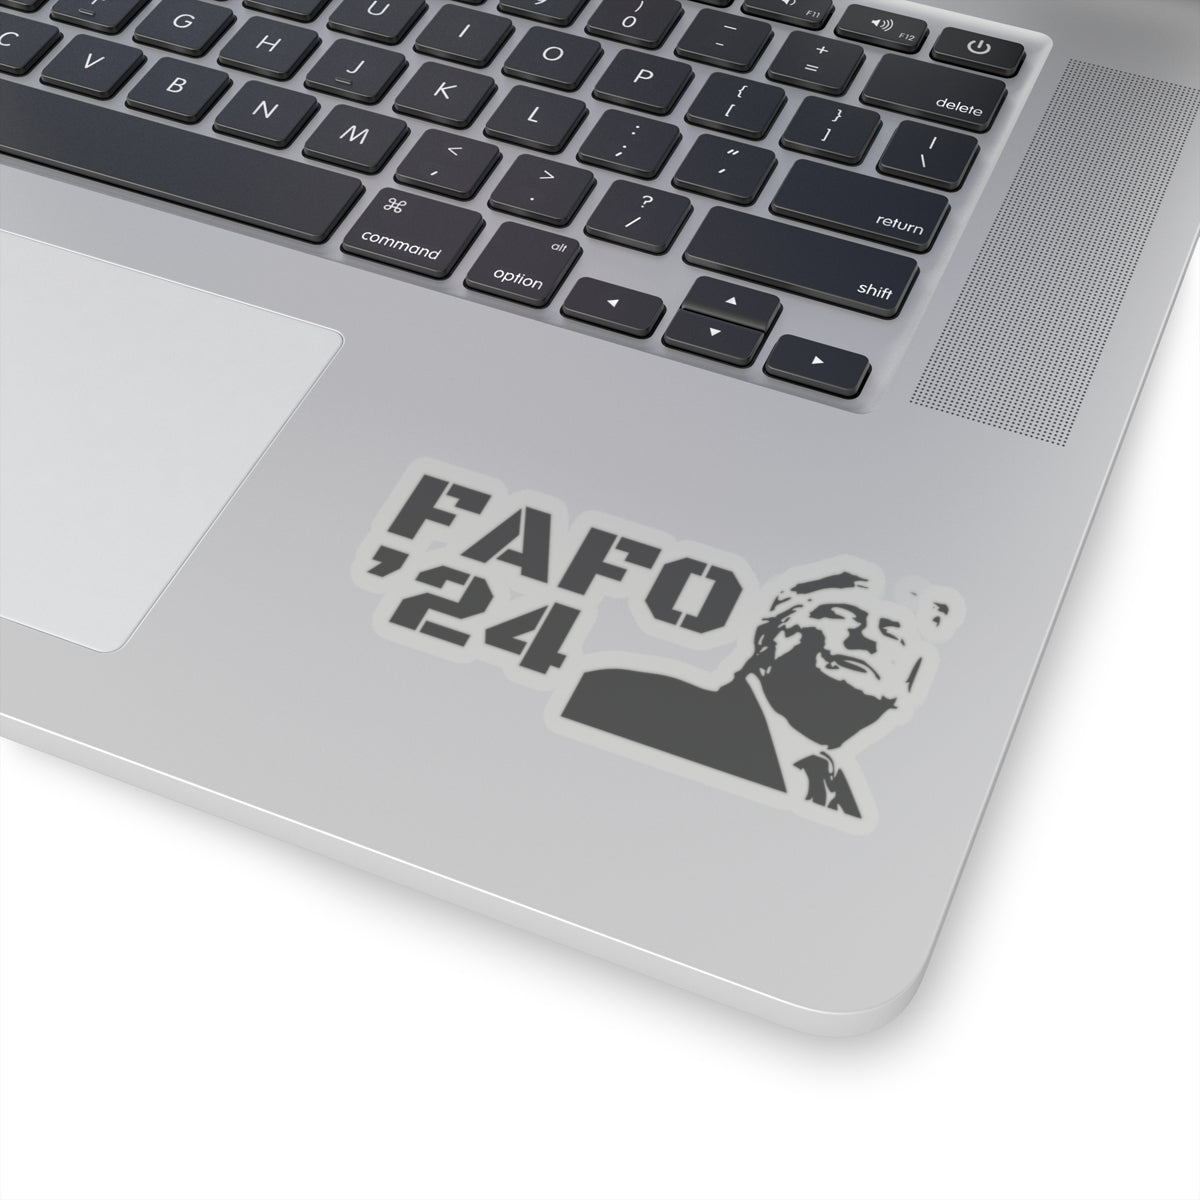 FAFO ‘24 TRUMP Image Stickers